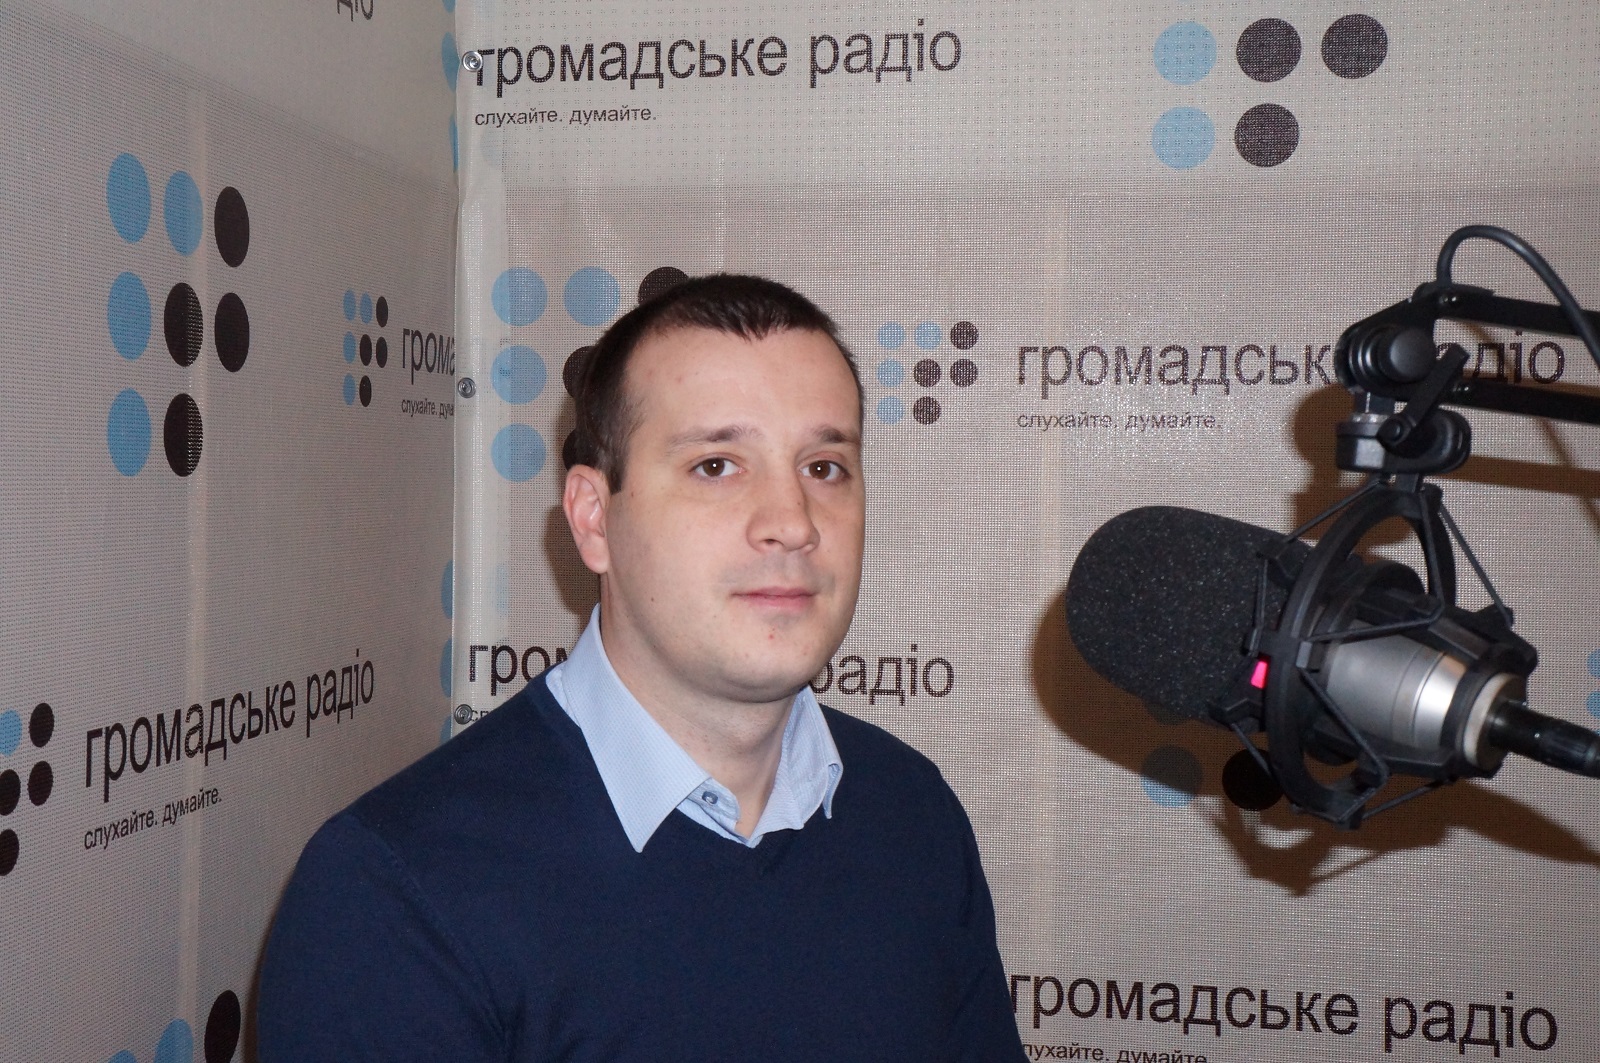 Робота — це зараз пріоритет номер один для людей на Донбасі, — В. Андрусів